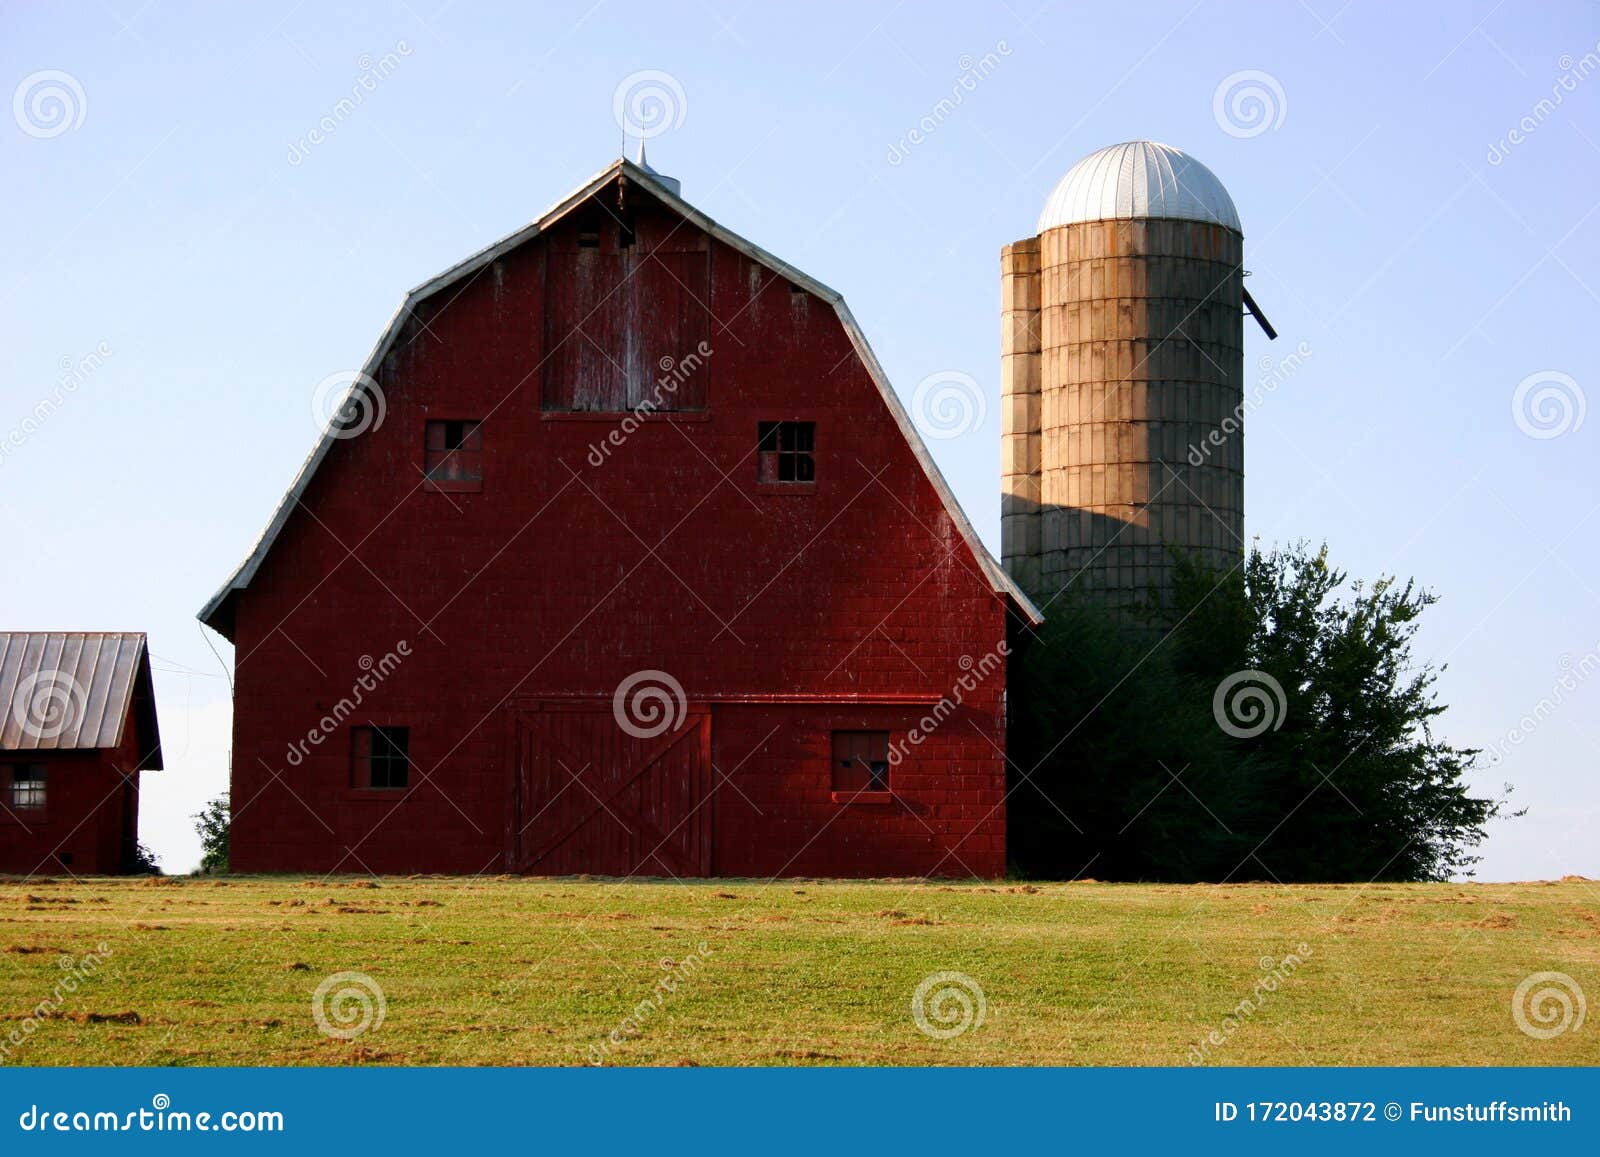 barn and silo against blue sky